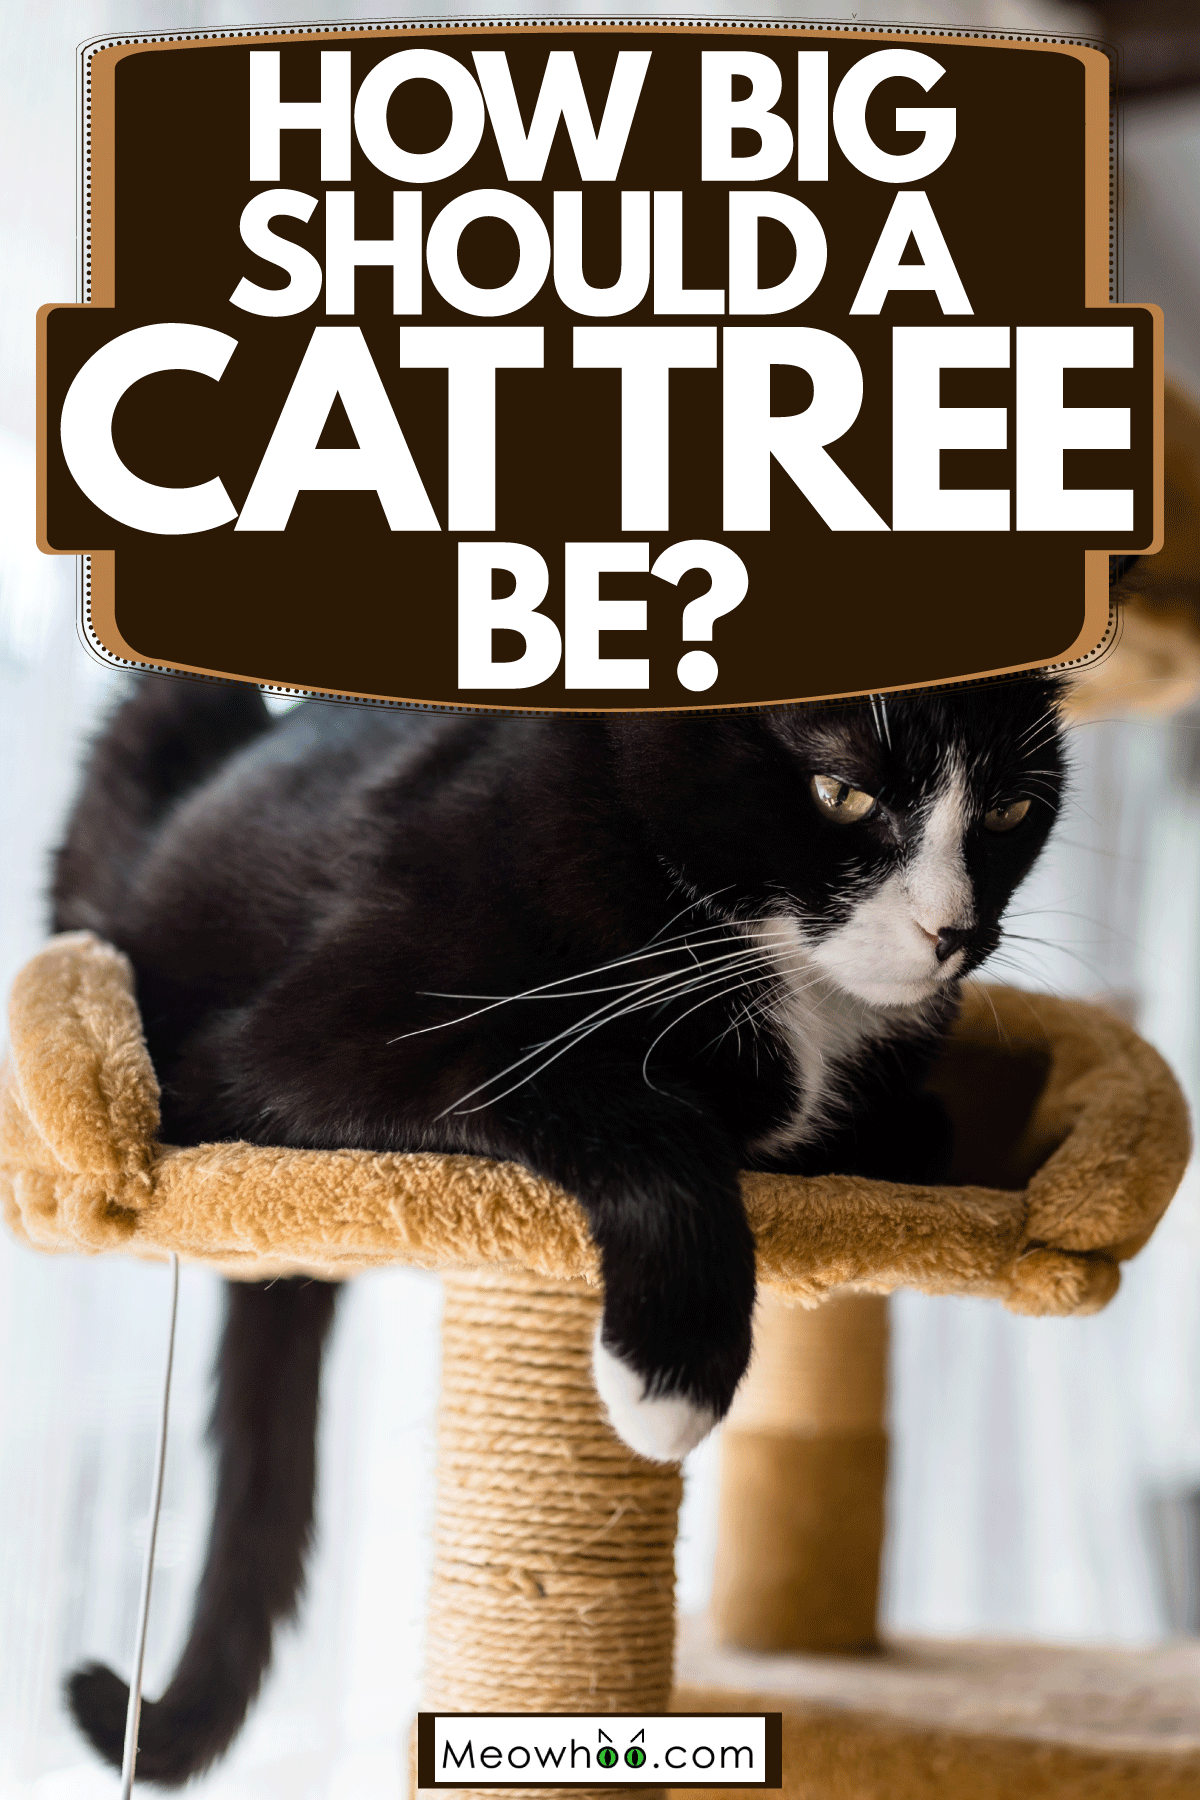 How Big Should A Cat Tree Be?